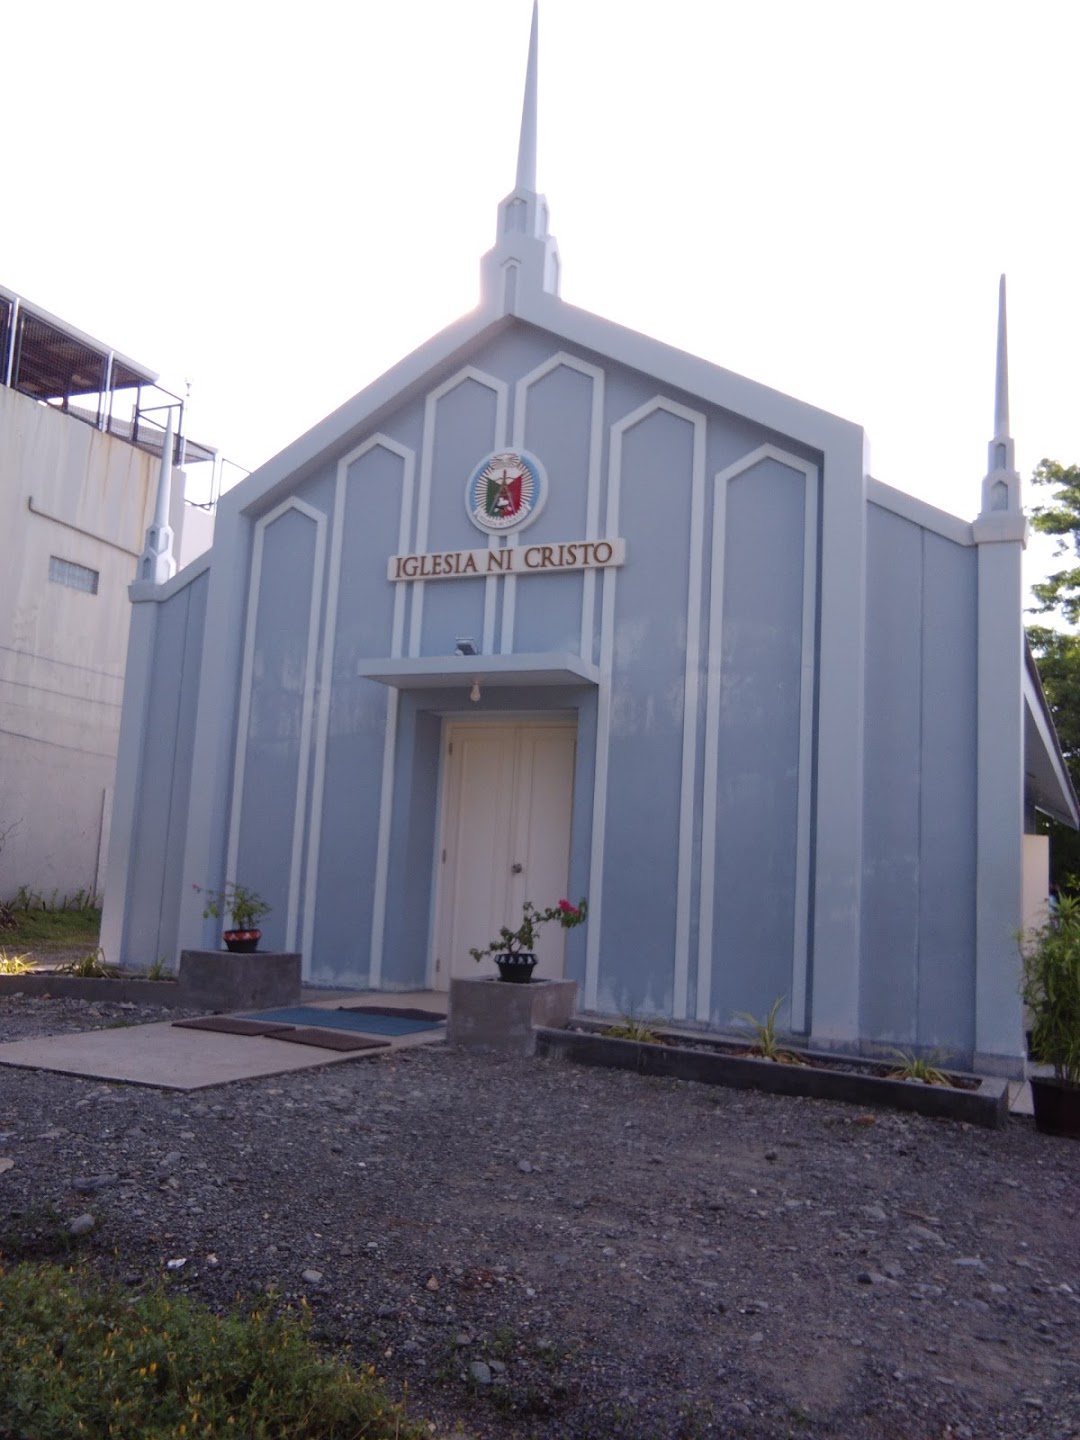 Iglesia Ni Cristo Church